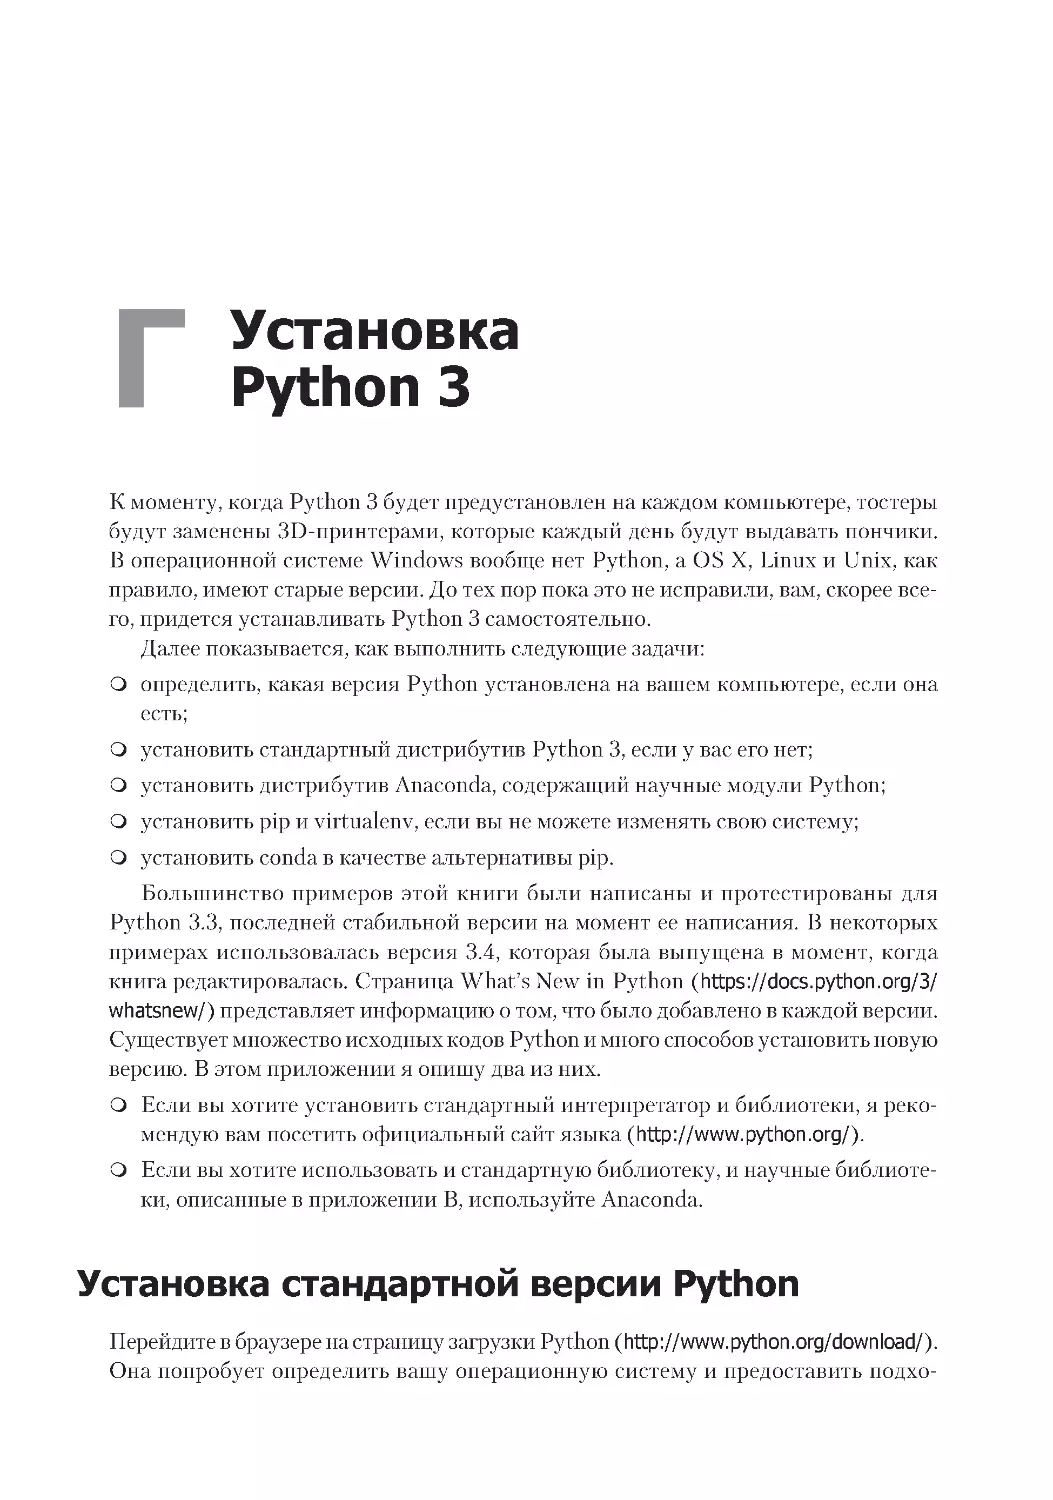 Приложение Г. Установка Python 3
Установка стандартной версии Python